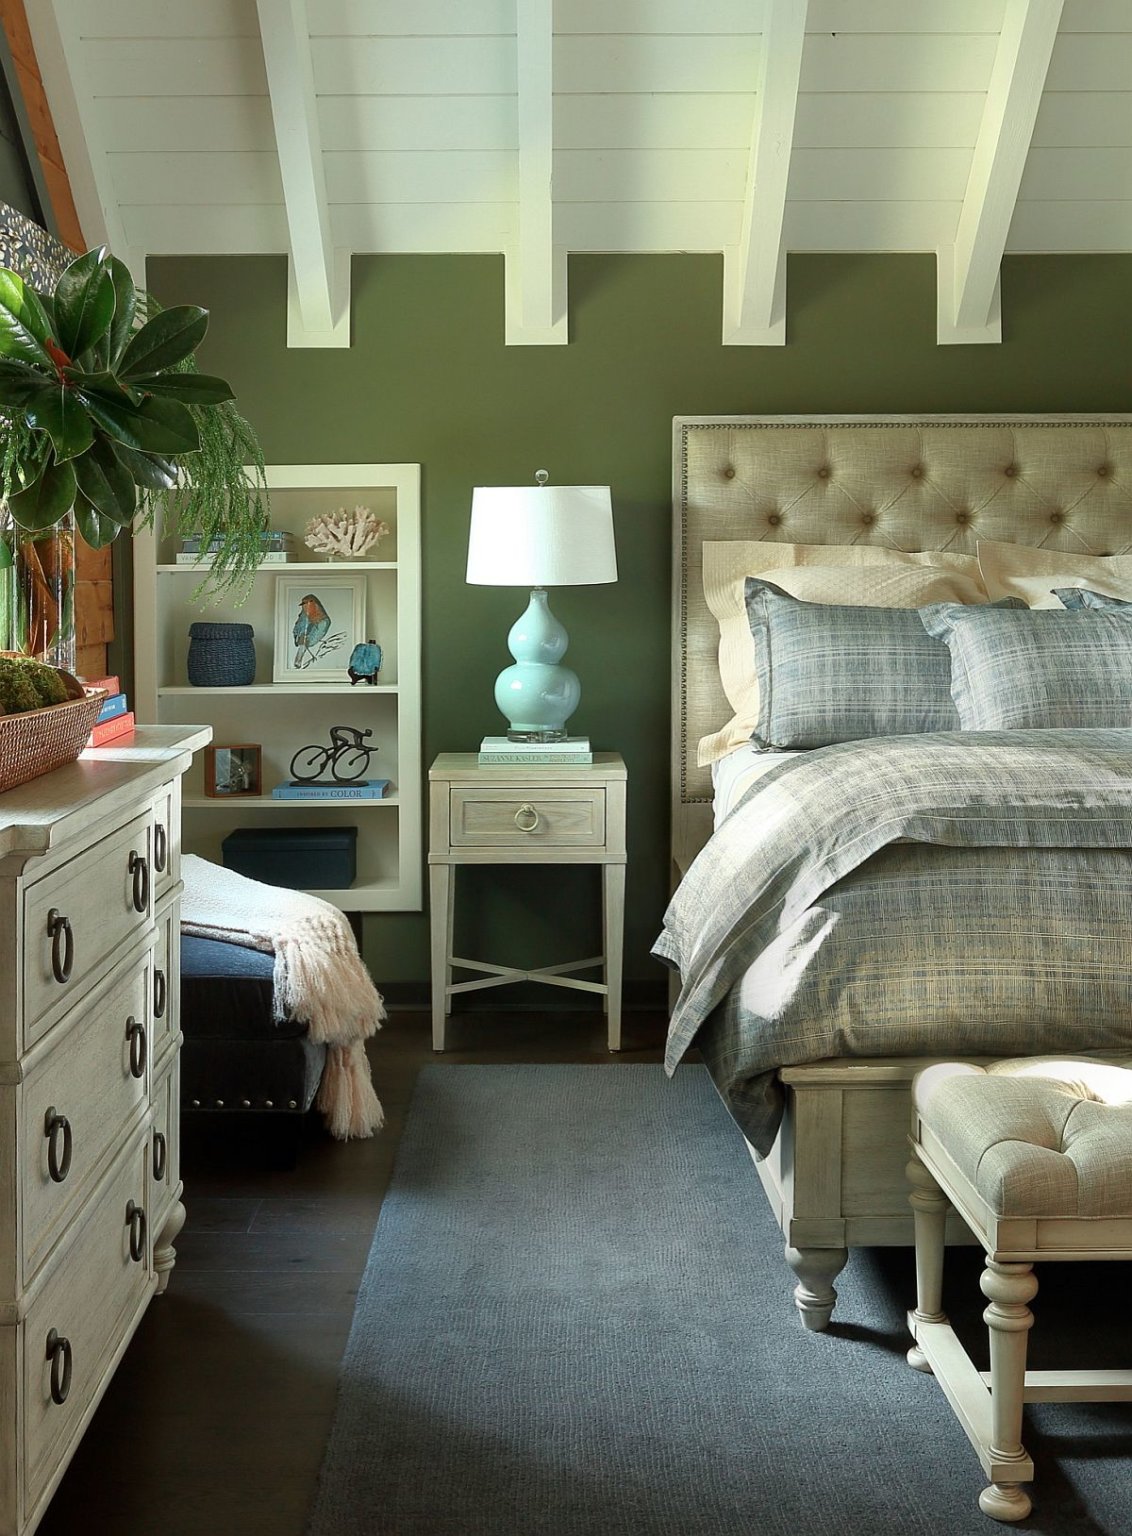 hình ảnh phòng ngủ truyền thống với màu xanh lá cây kết hợp sắc kem nhã nhặn.